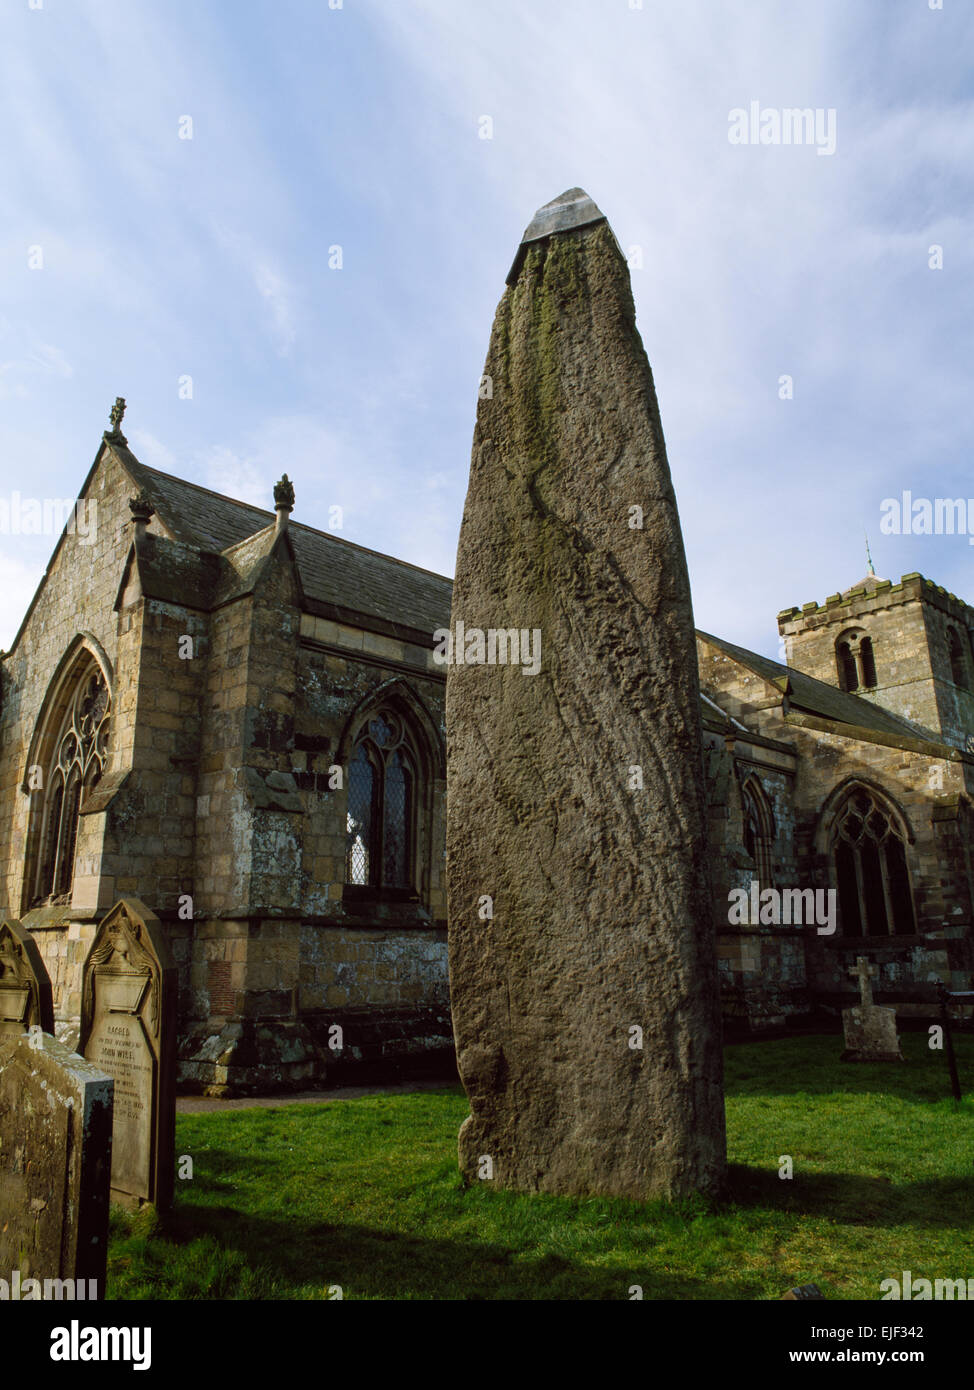 À 7,7 m c l'Rudston Monolith, East Yorkshire, est le plus haut standing stone en Grande-Bretagne, un pilier de pierre meulière obliques a 10 kilomètres de là. Banque D'Images